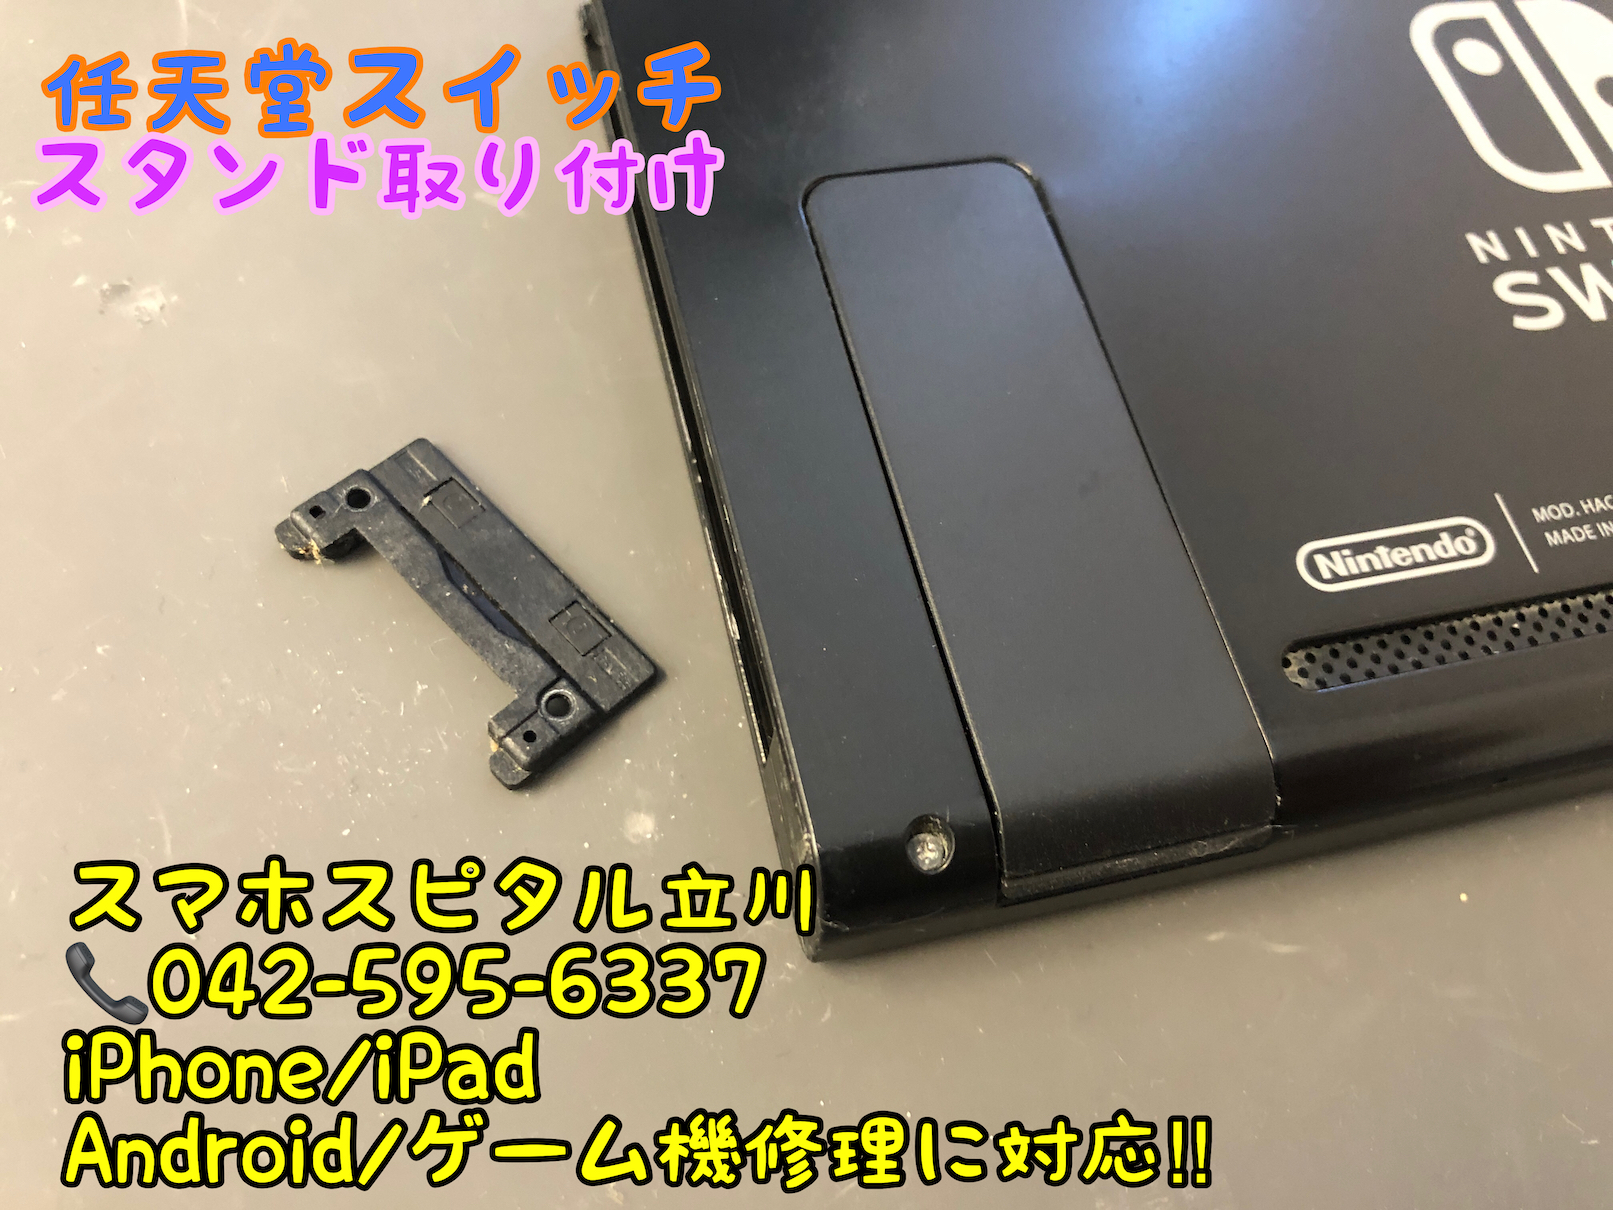 任天堂switch スタンドが紛失 新しく取り付けも可能です Switch Nintendo3ds Psp 修理のゲームホスピタル Switch Nintendo3ds ニンテンドーds Psp 修理